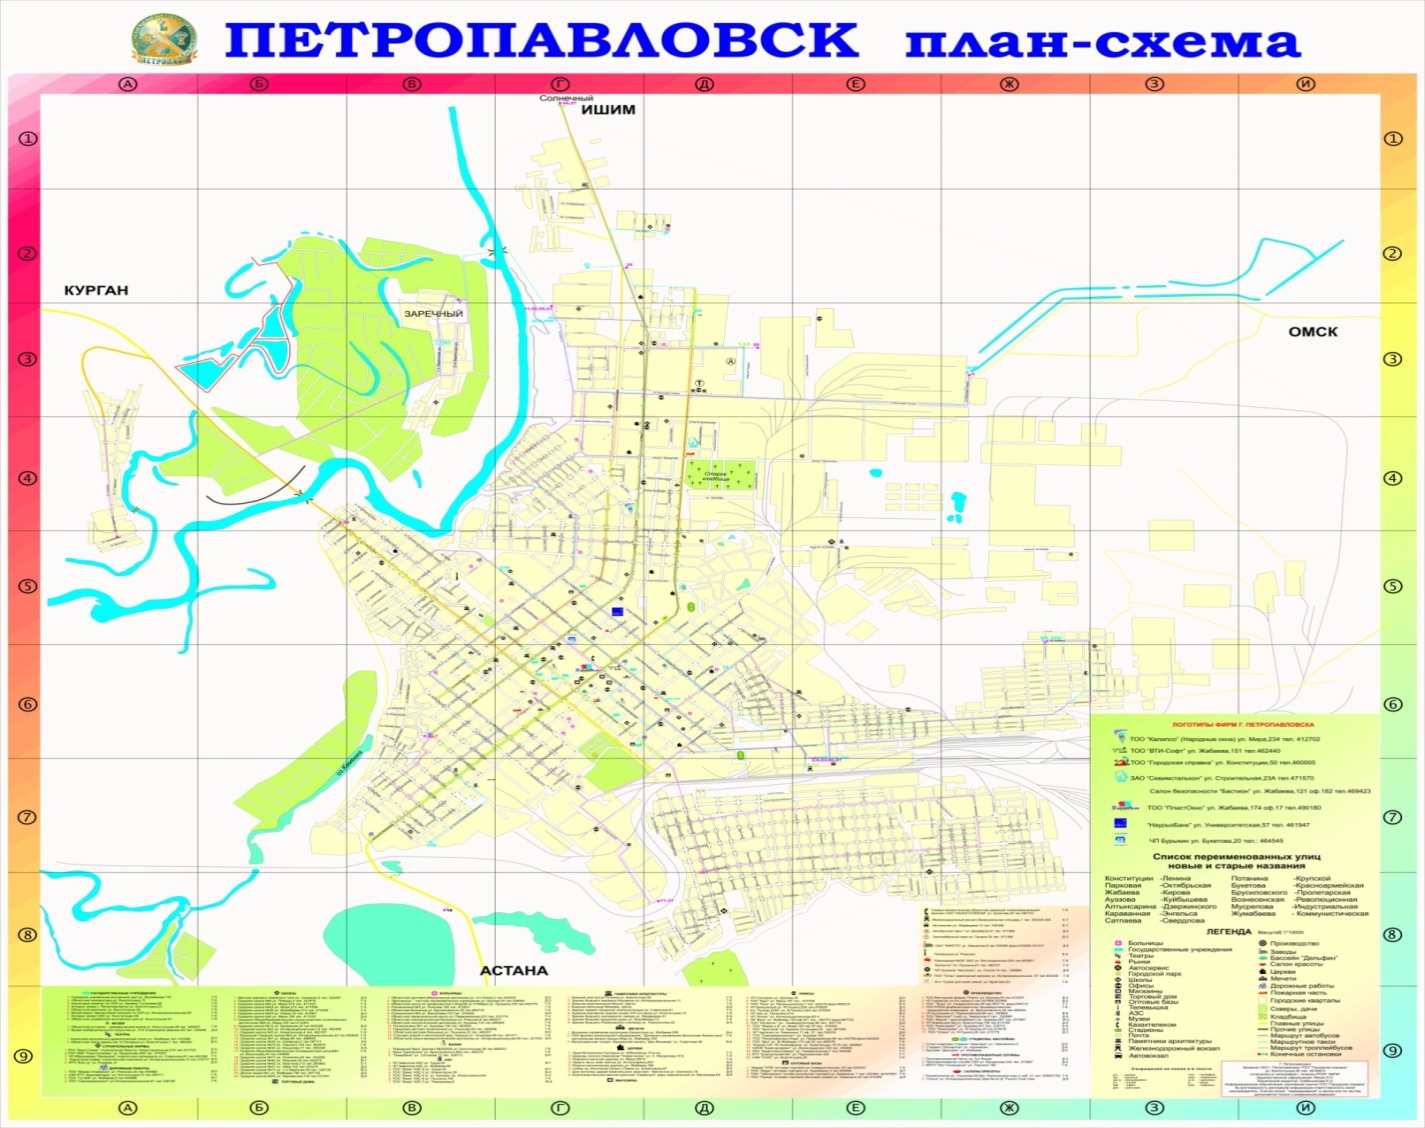 Река ишим на карте казахстана